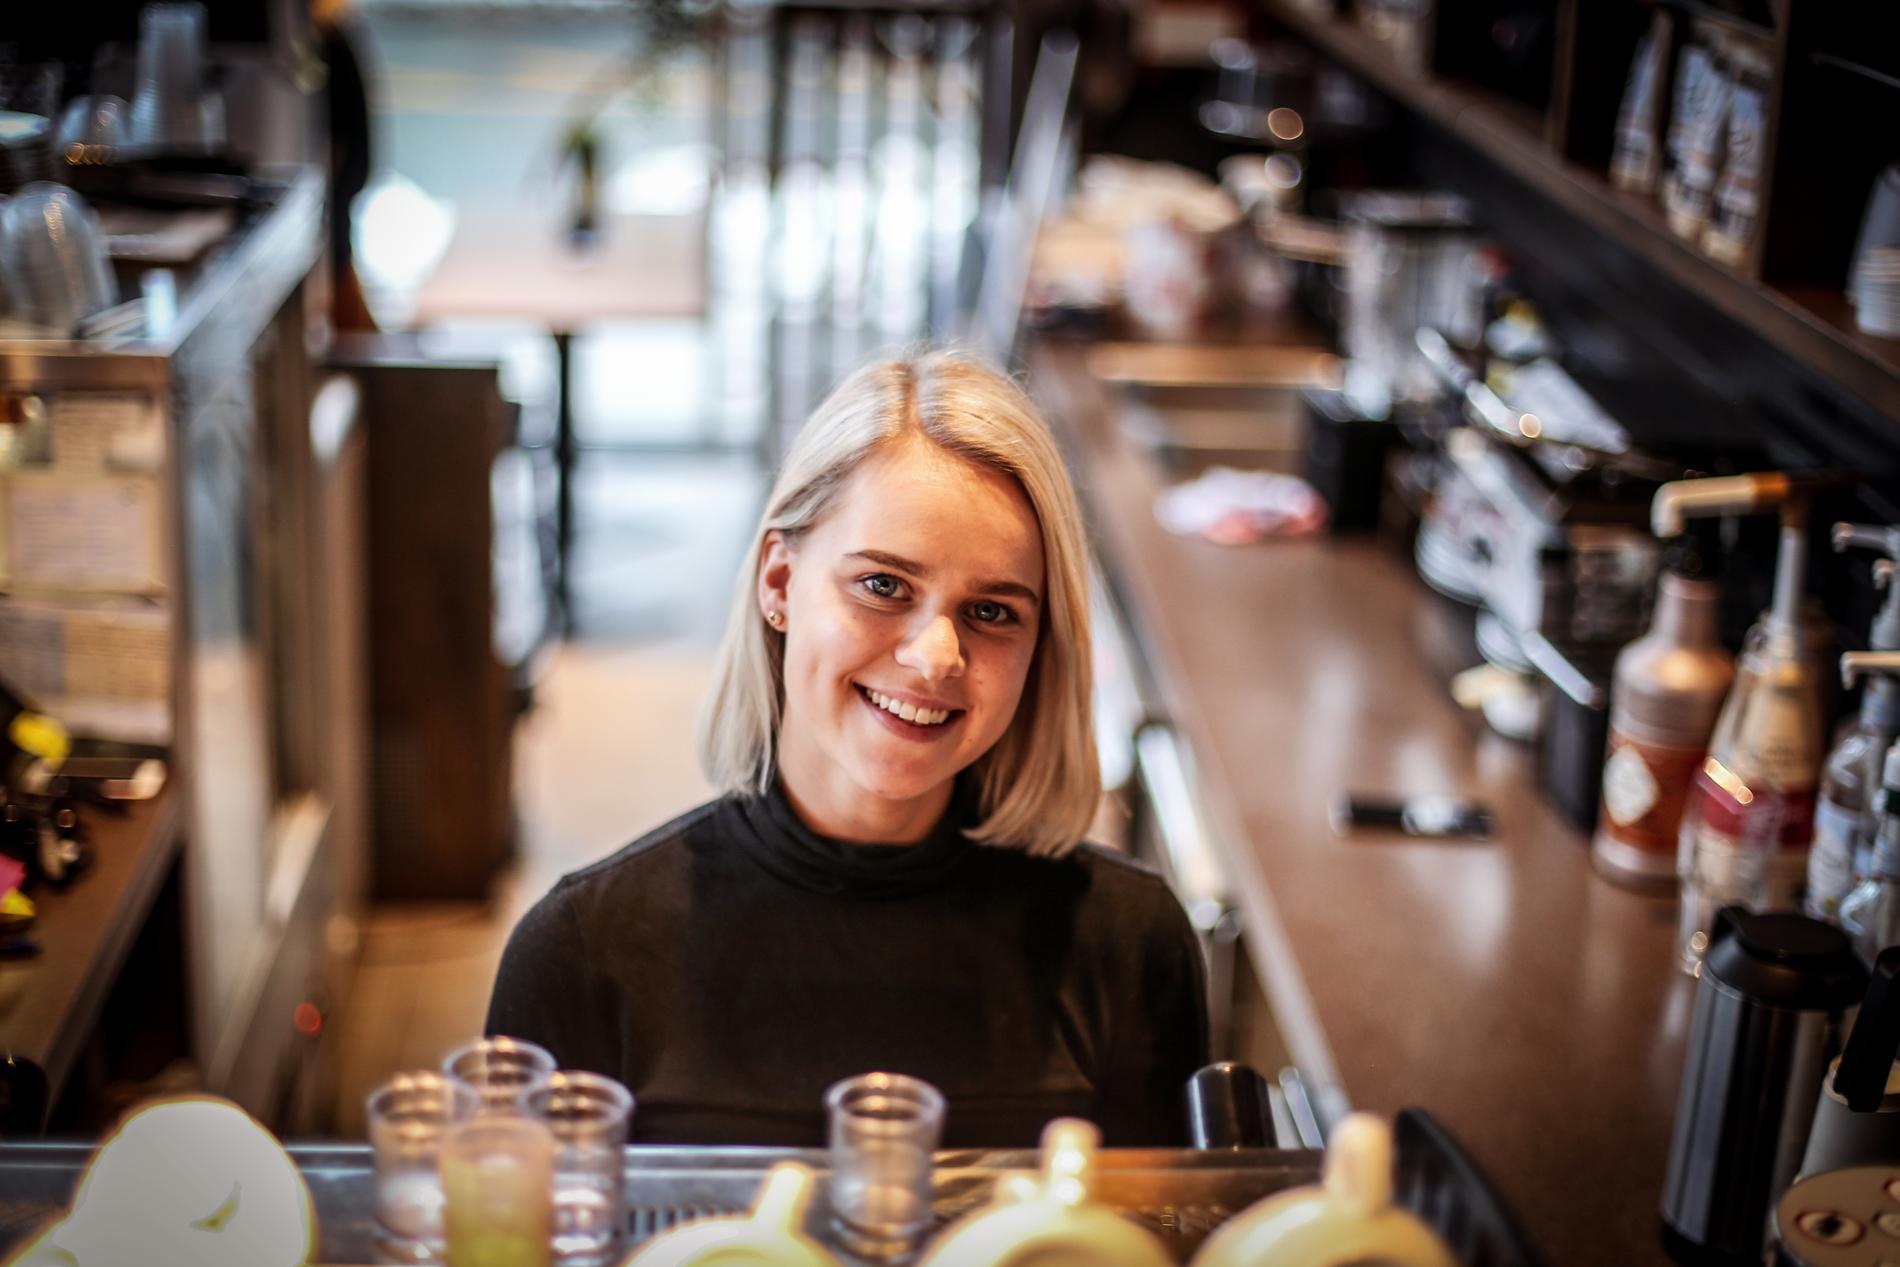  Hanne Urdal (22) fra Søgne har fått god kompetanse det siste året som barista på Kaffebaren i Q42. Det sikret henne en førsteplass i regionmesterskapet i kaffekunst. 